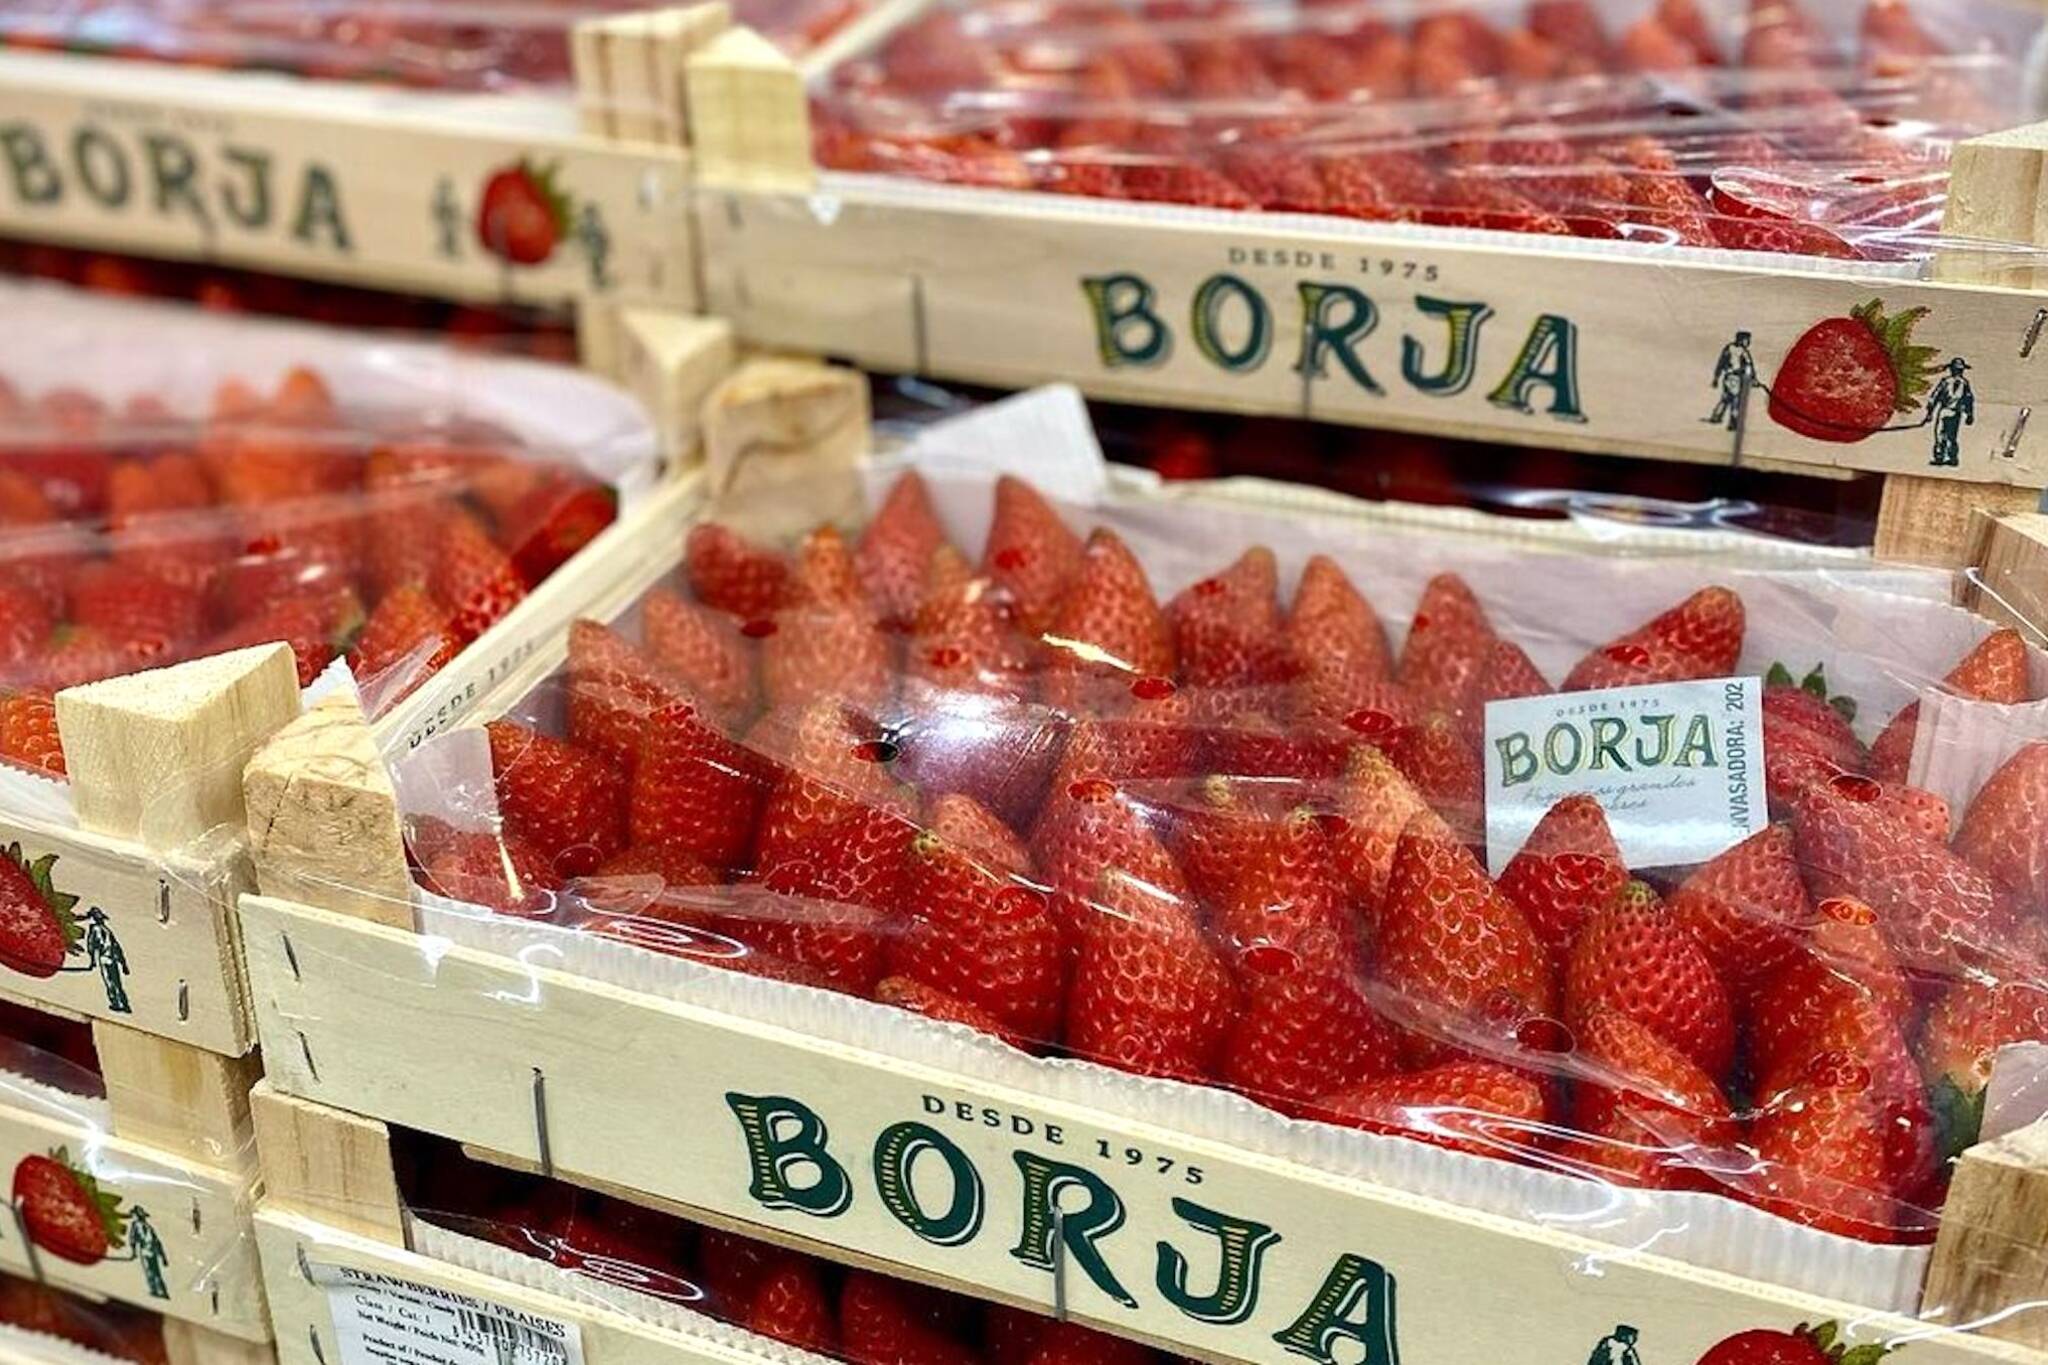 spanish strawberries